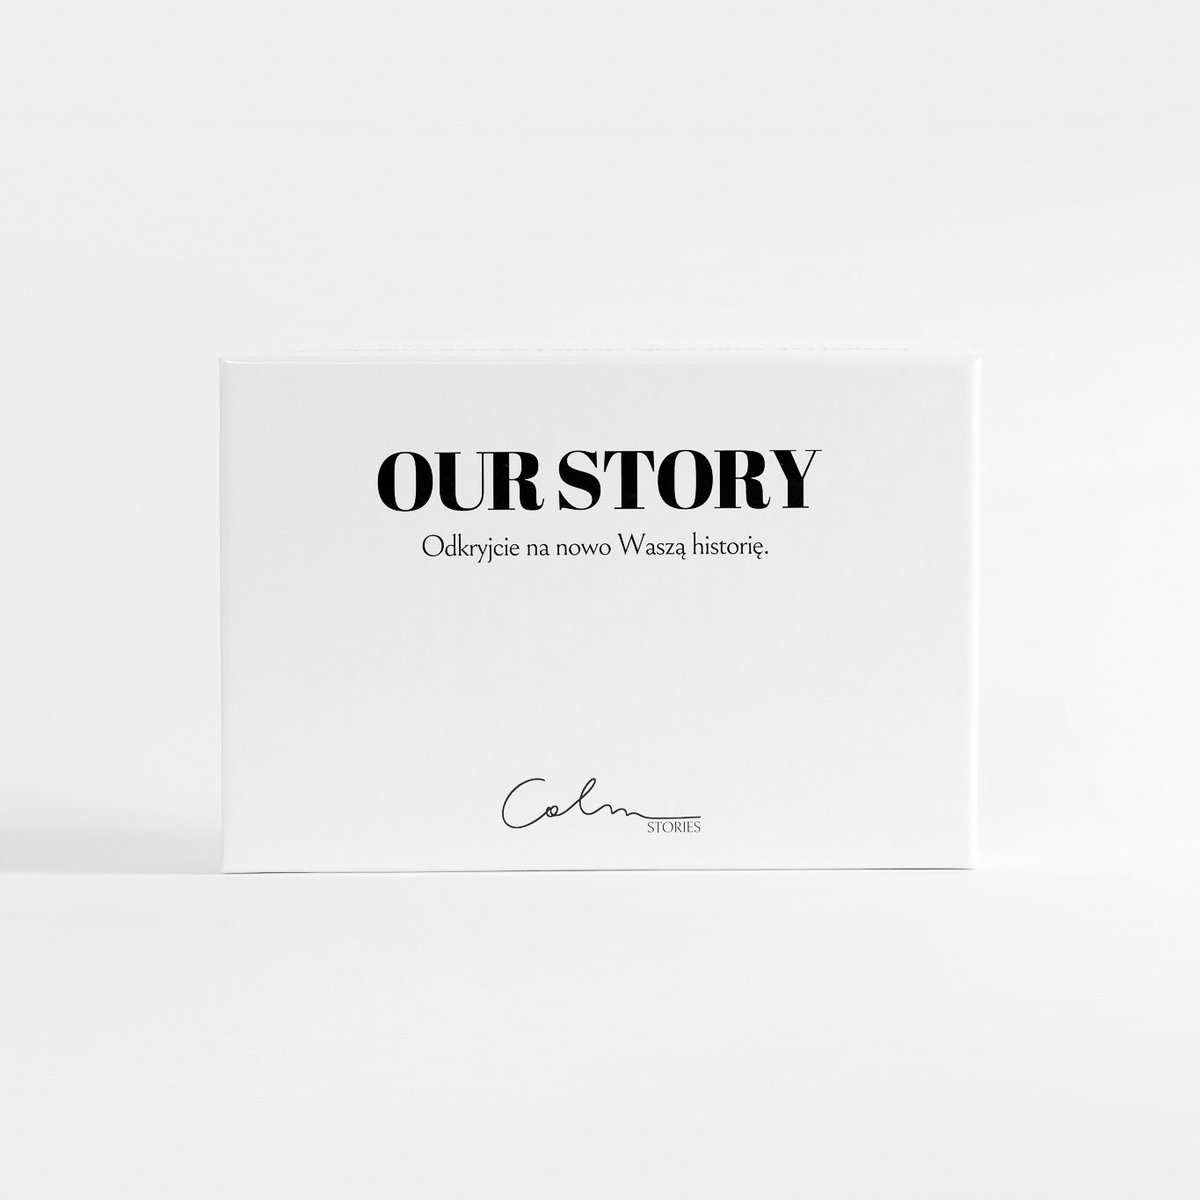 Our Story. Odkryjcie na nowo Waszą historię